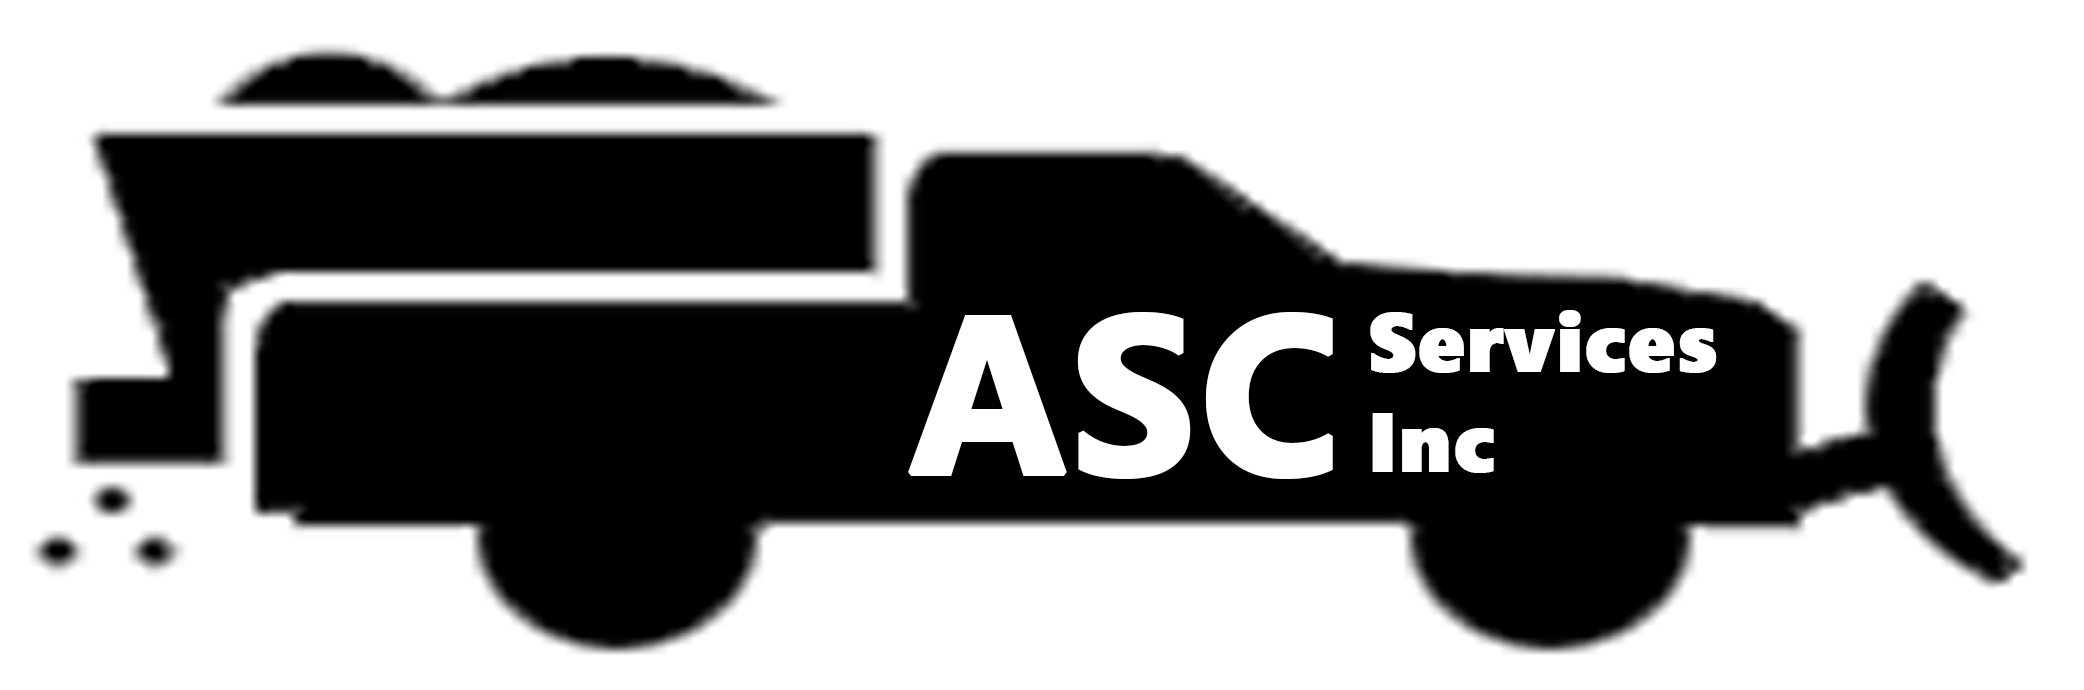 ASC Services Inc.